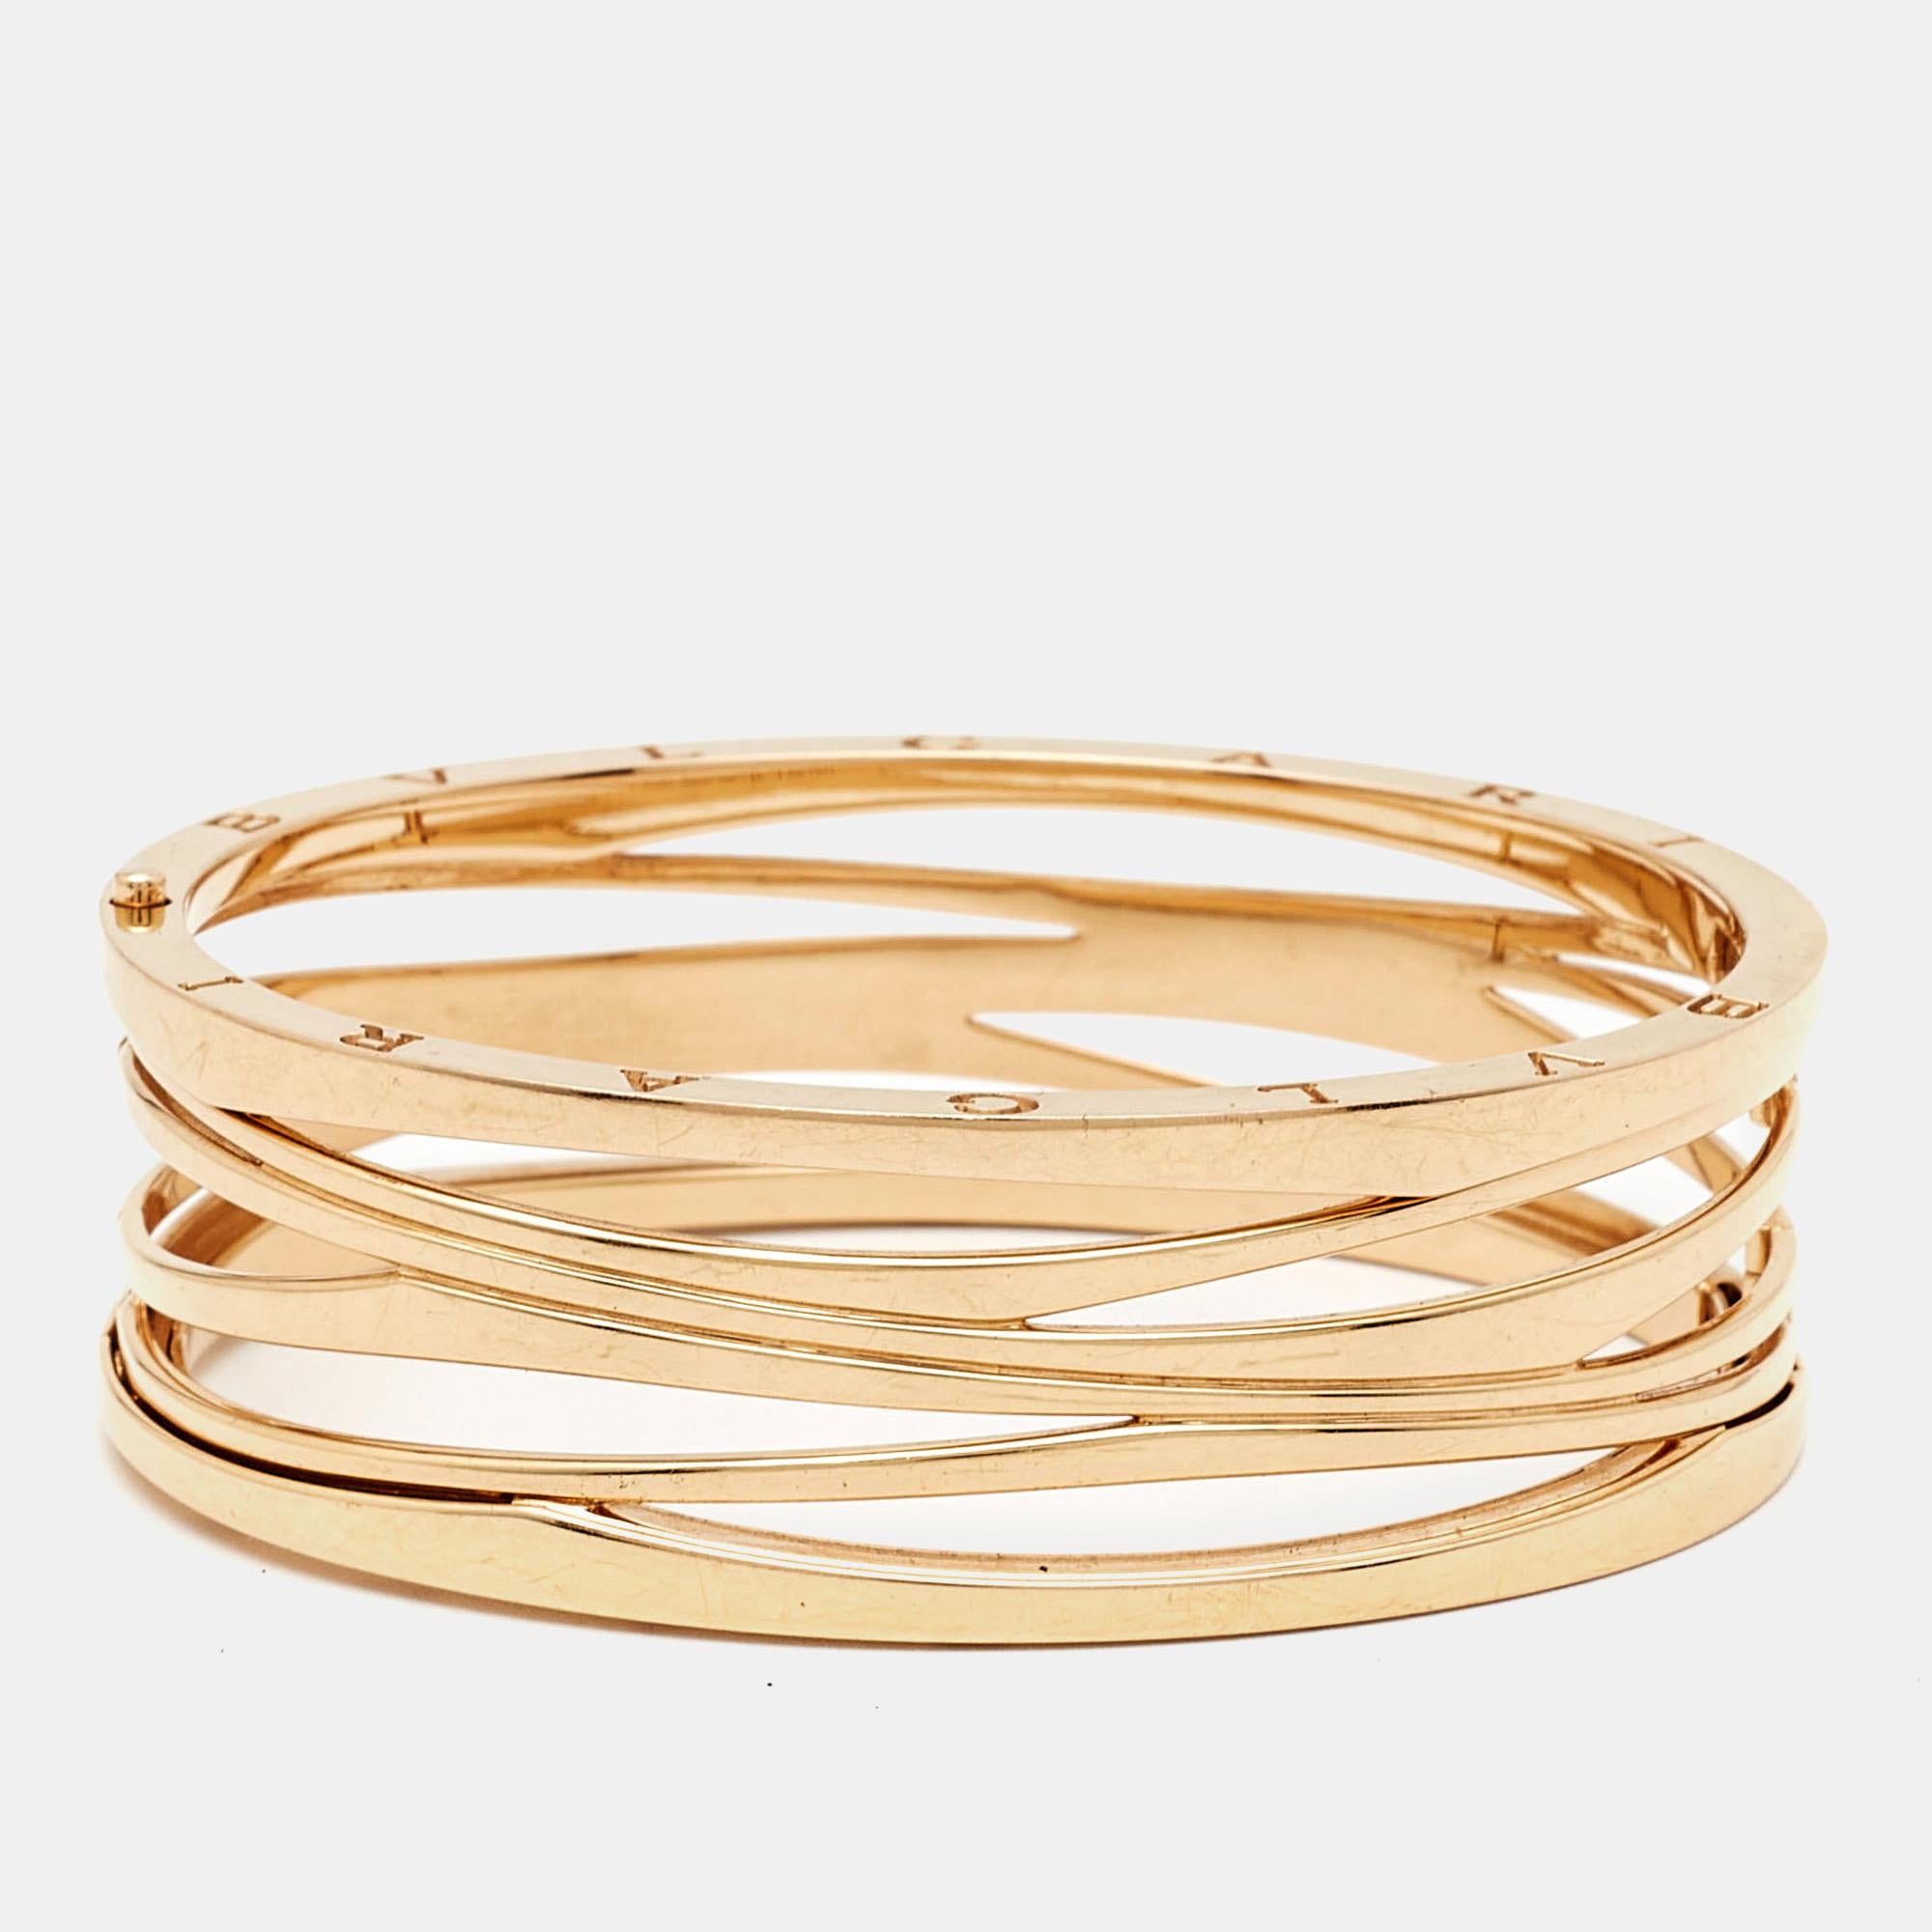 Réalisé en or rose 18 carats brillant, le bracelet large Bvlgari B.Zero1 dégage un charme intemporel. Son design épuré présente le motif emblématique de la spirale, qui symbolise la beauté et la force éternelles. Avec un mélange luxueux de